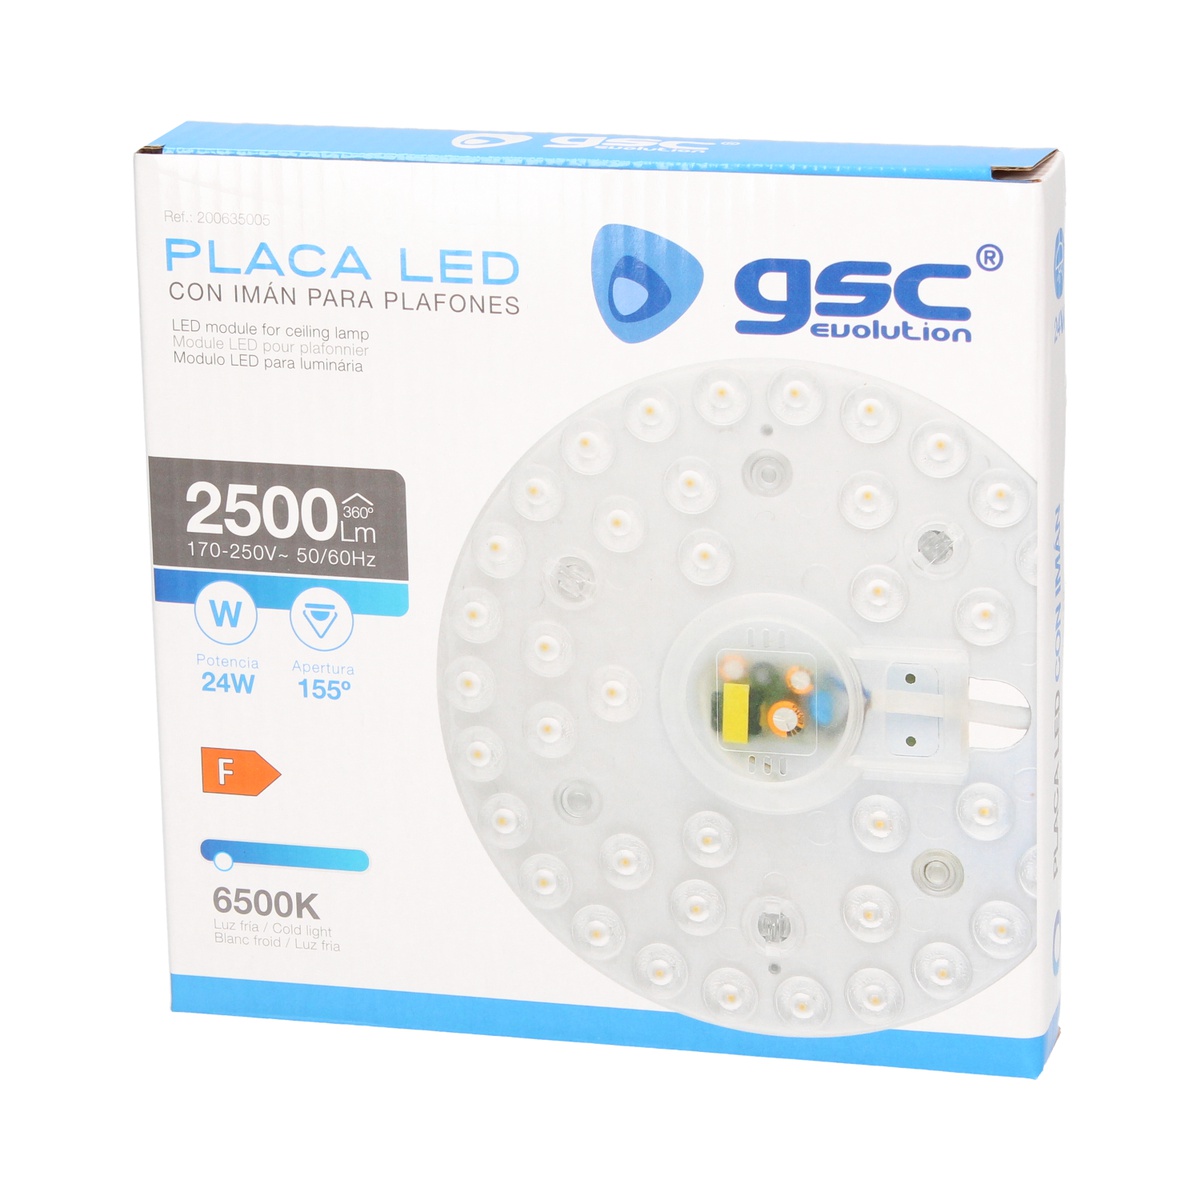 Placa LED con imán para plafones 24W 6500K